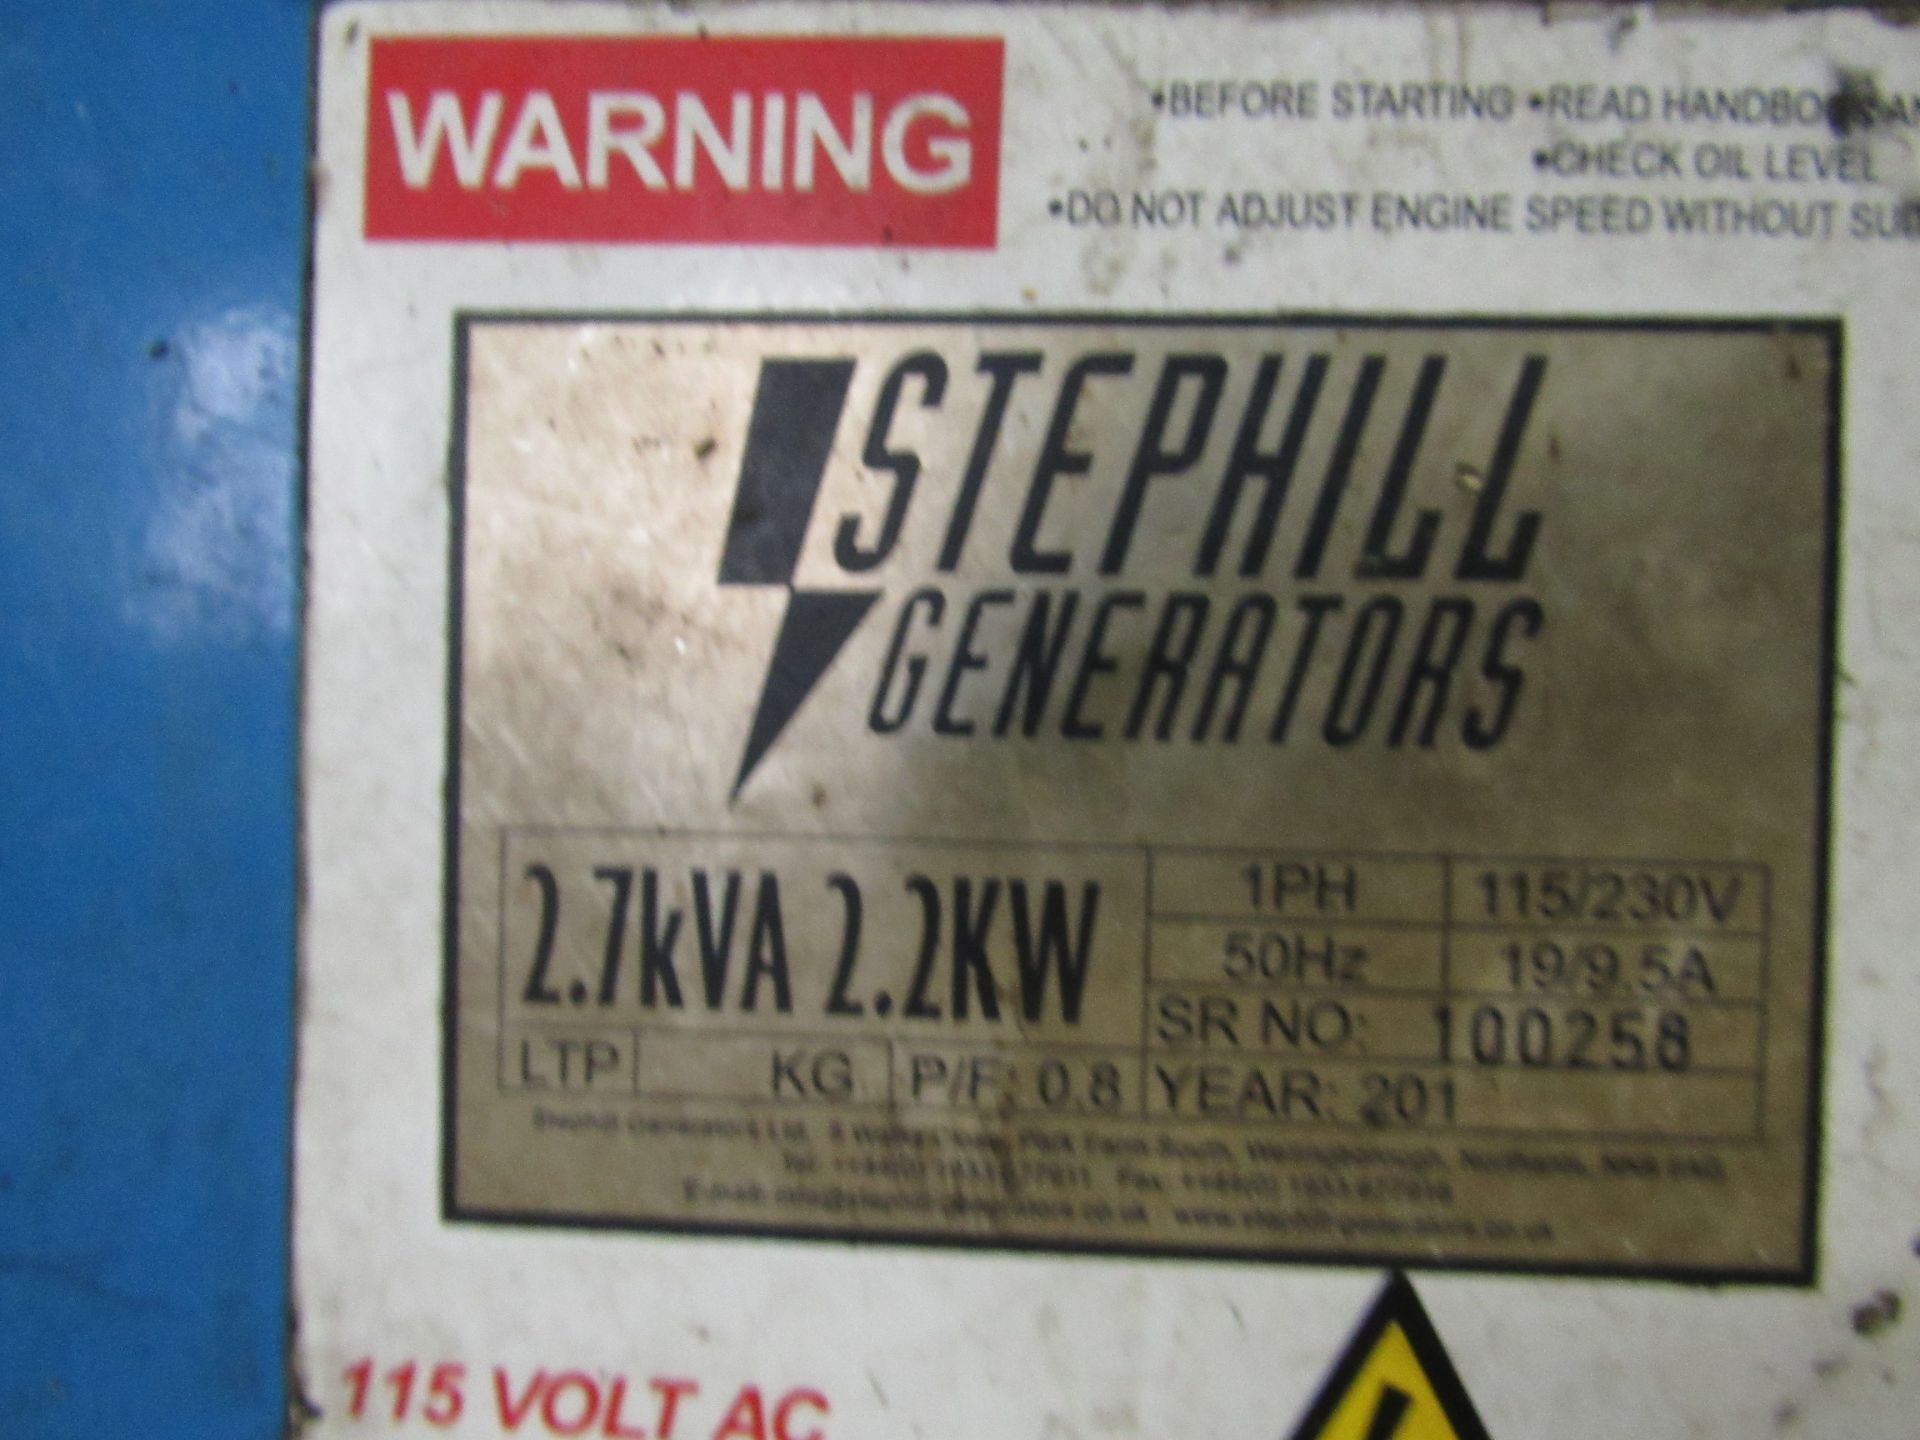 Stephill Generator 27kva Generator, 240v/110v - Image 3 of 4